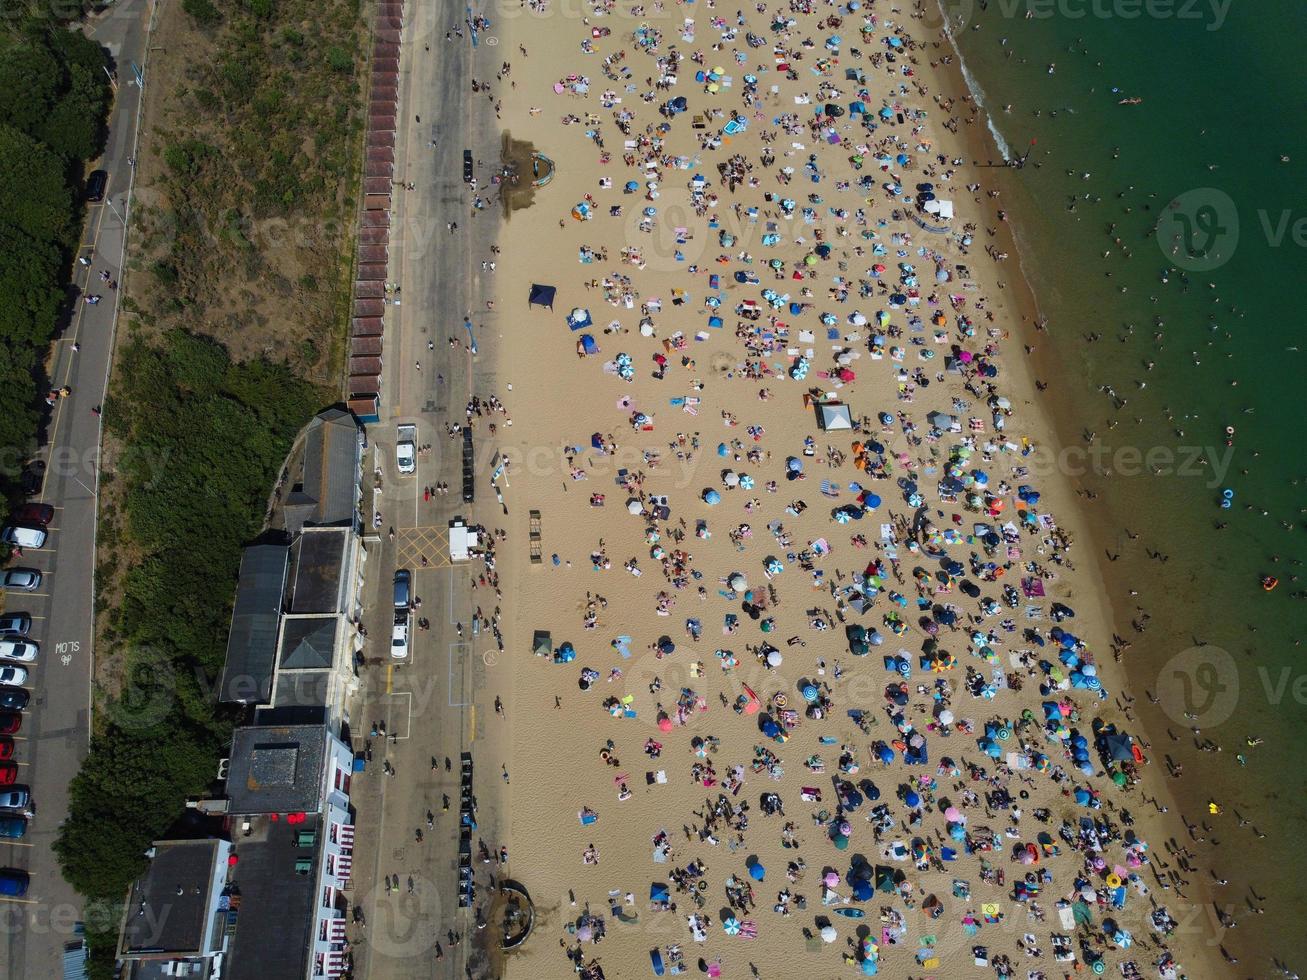 hög vinkel havsutsikt vid stranden med människor i Bournemouth, England, Storbritannien, flygbilder från det brittiska havet foto